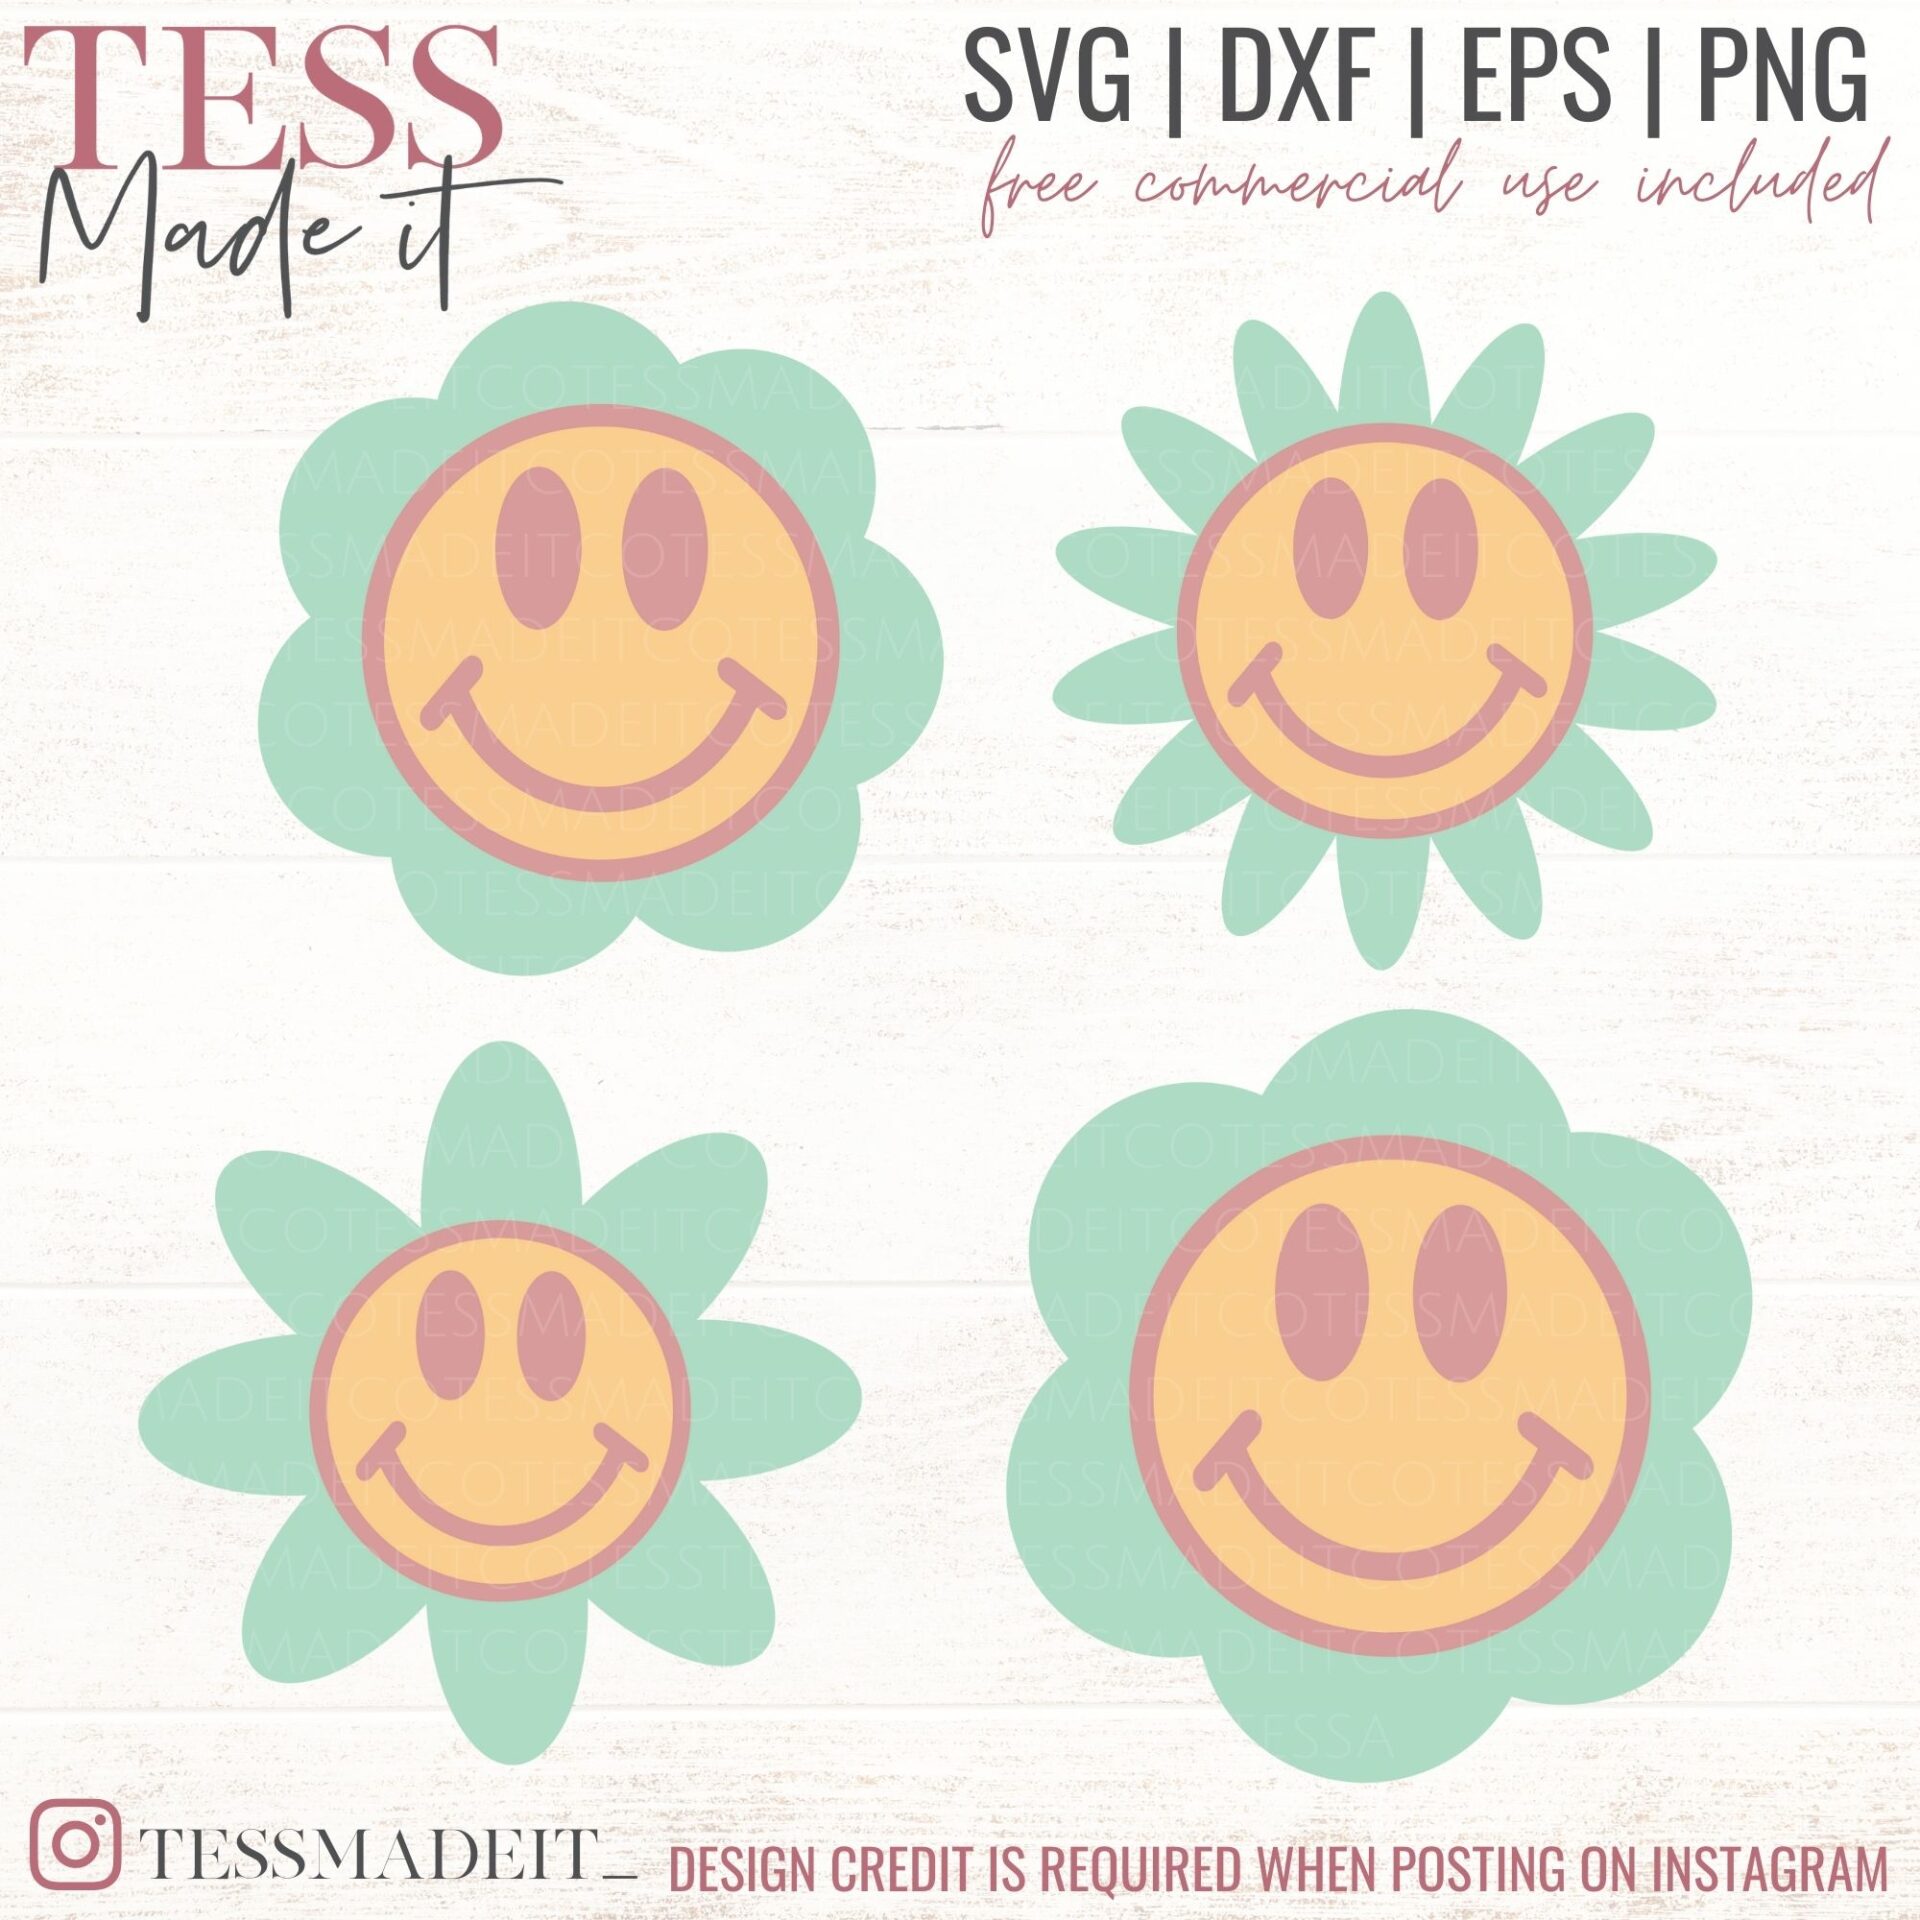 Flower Smiley Face SVG Files, Flower Face SVG, Smiley Face Clip Art, Trendy  Smiley Face Svg, Daisy svg, dxf, eps, Vector, DIGITAL